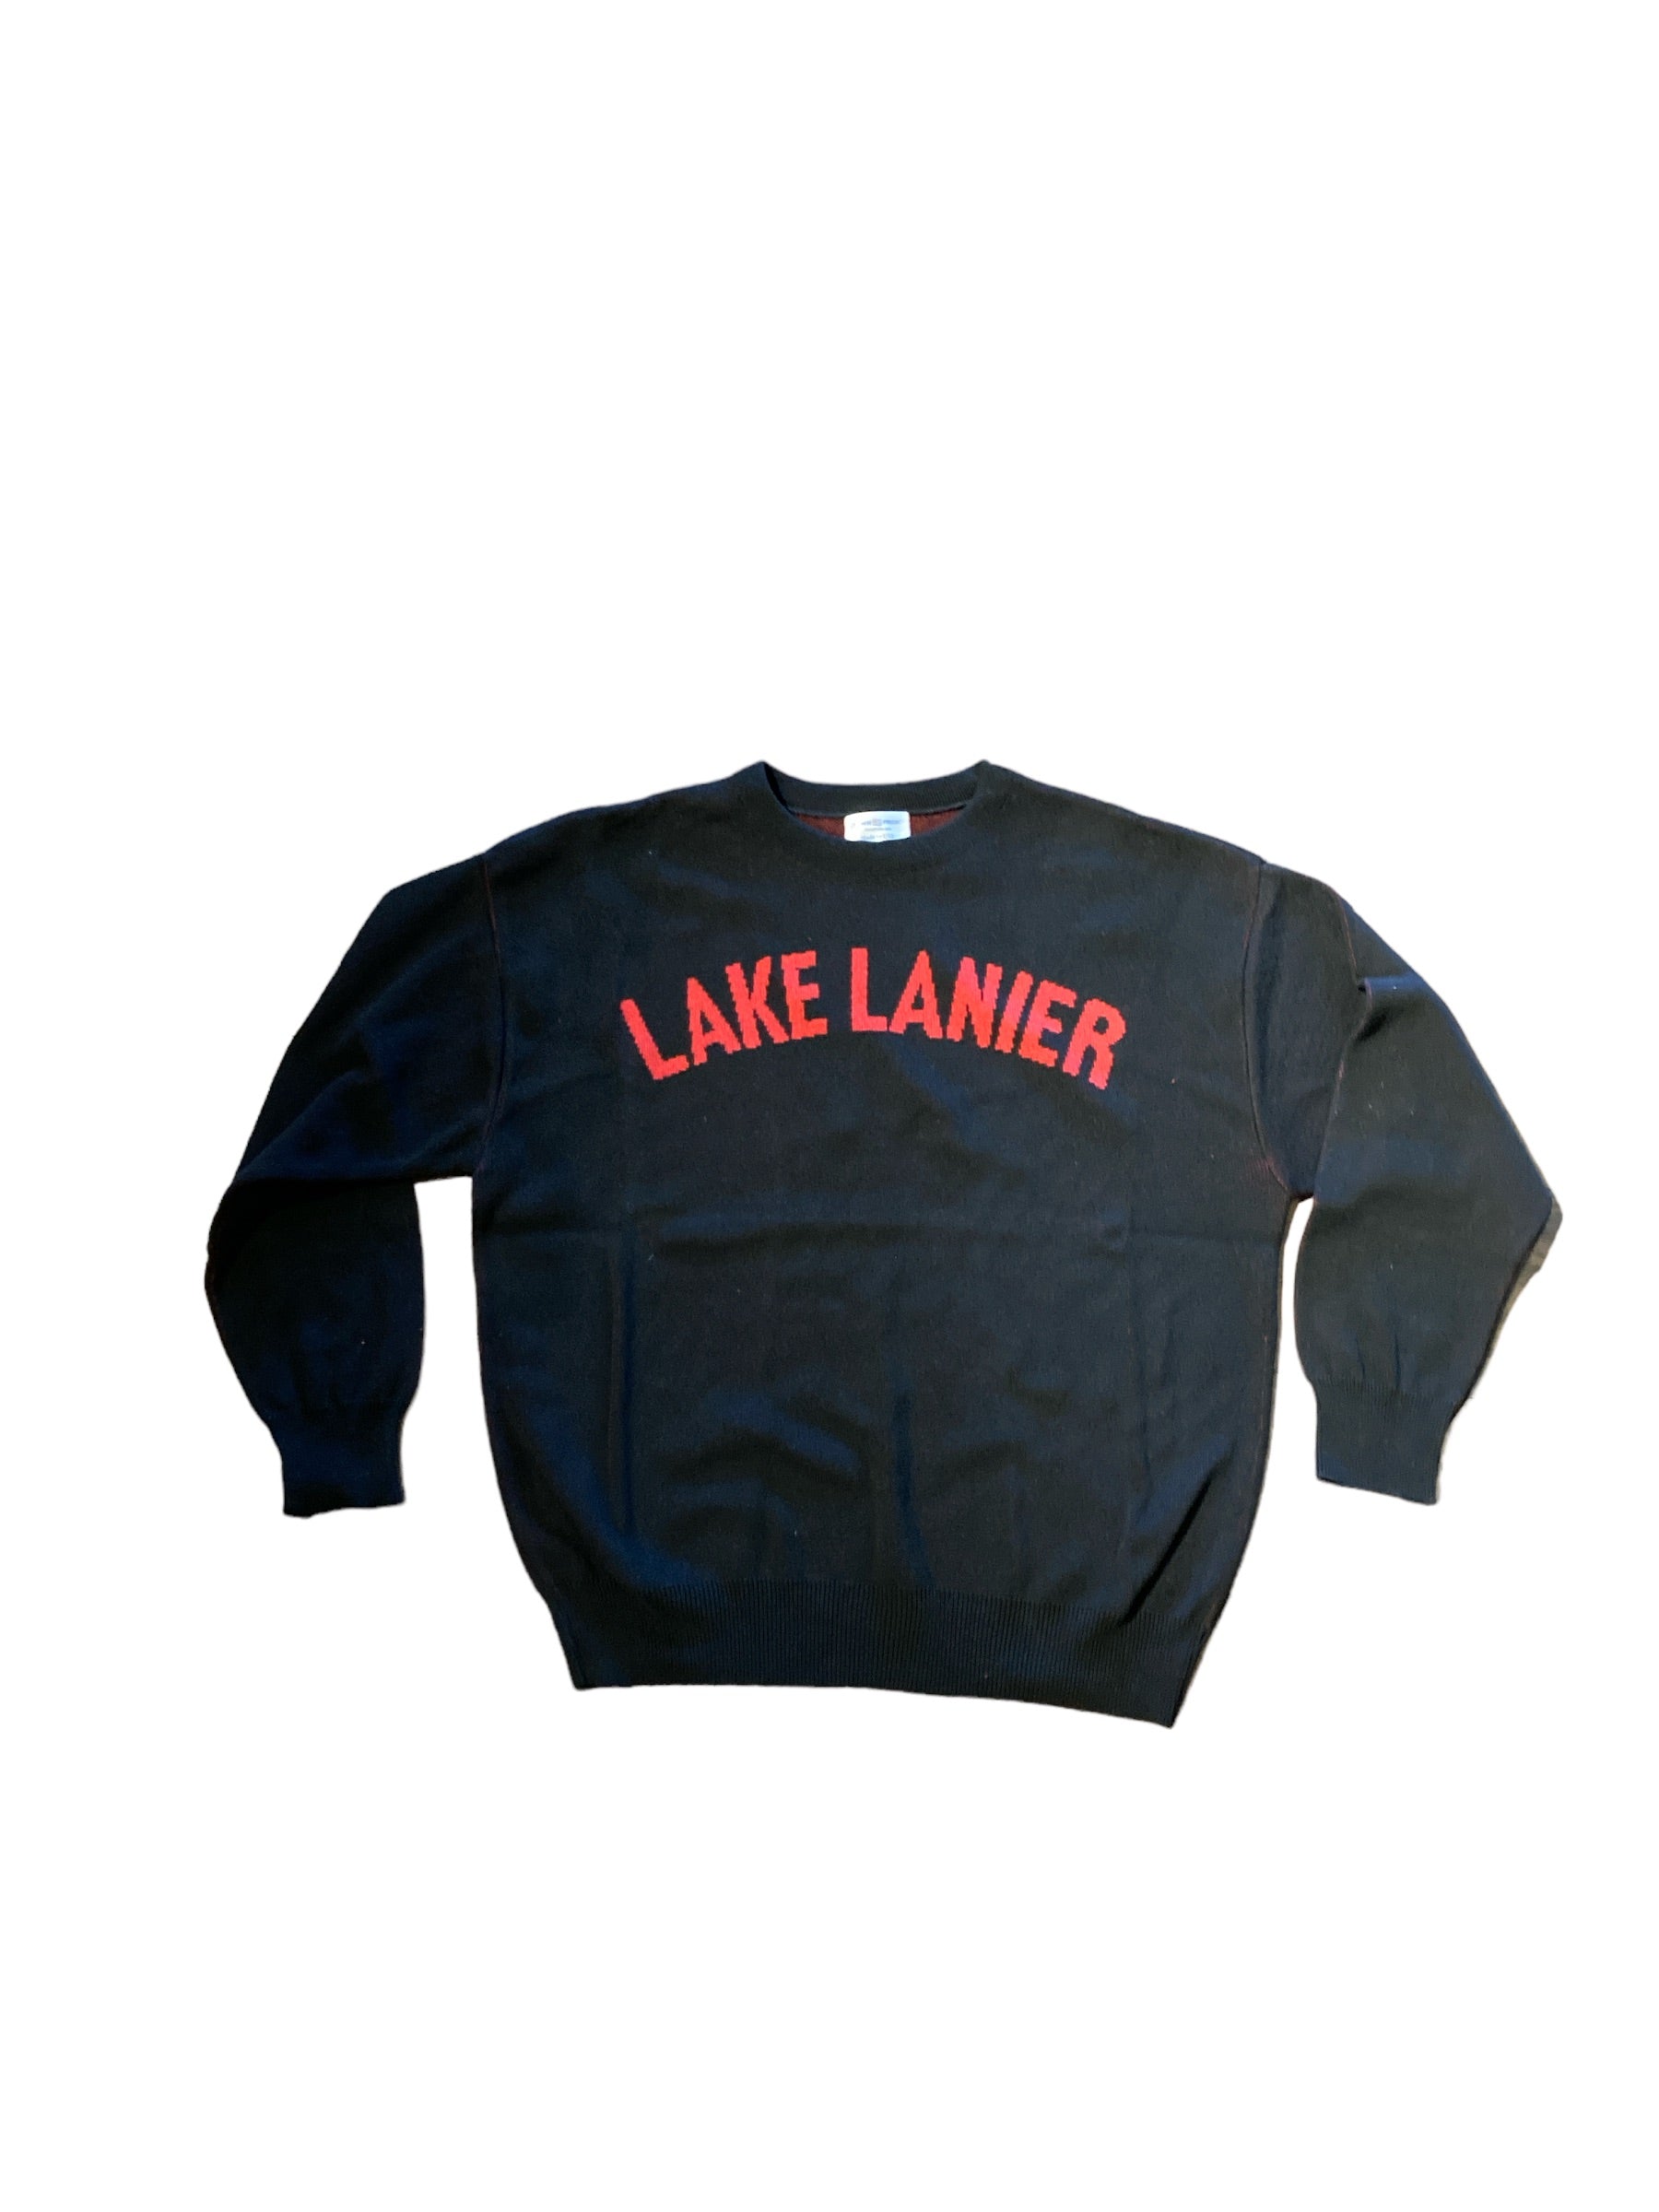 LAKE LANIER BOXY SWEATER